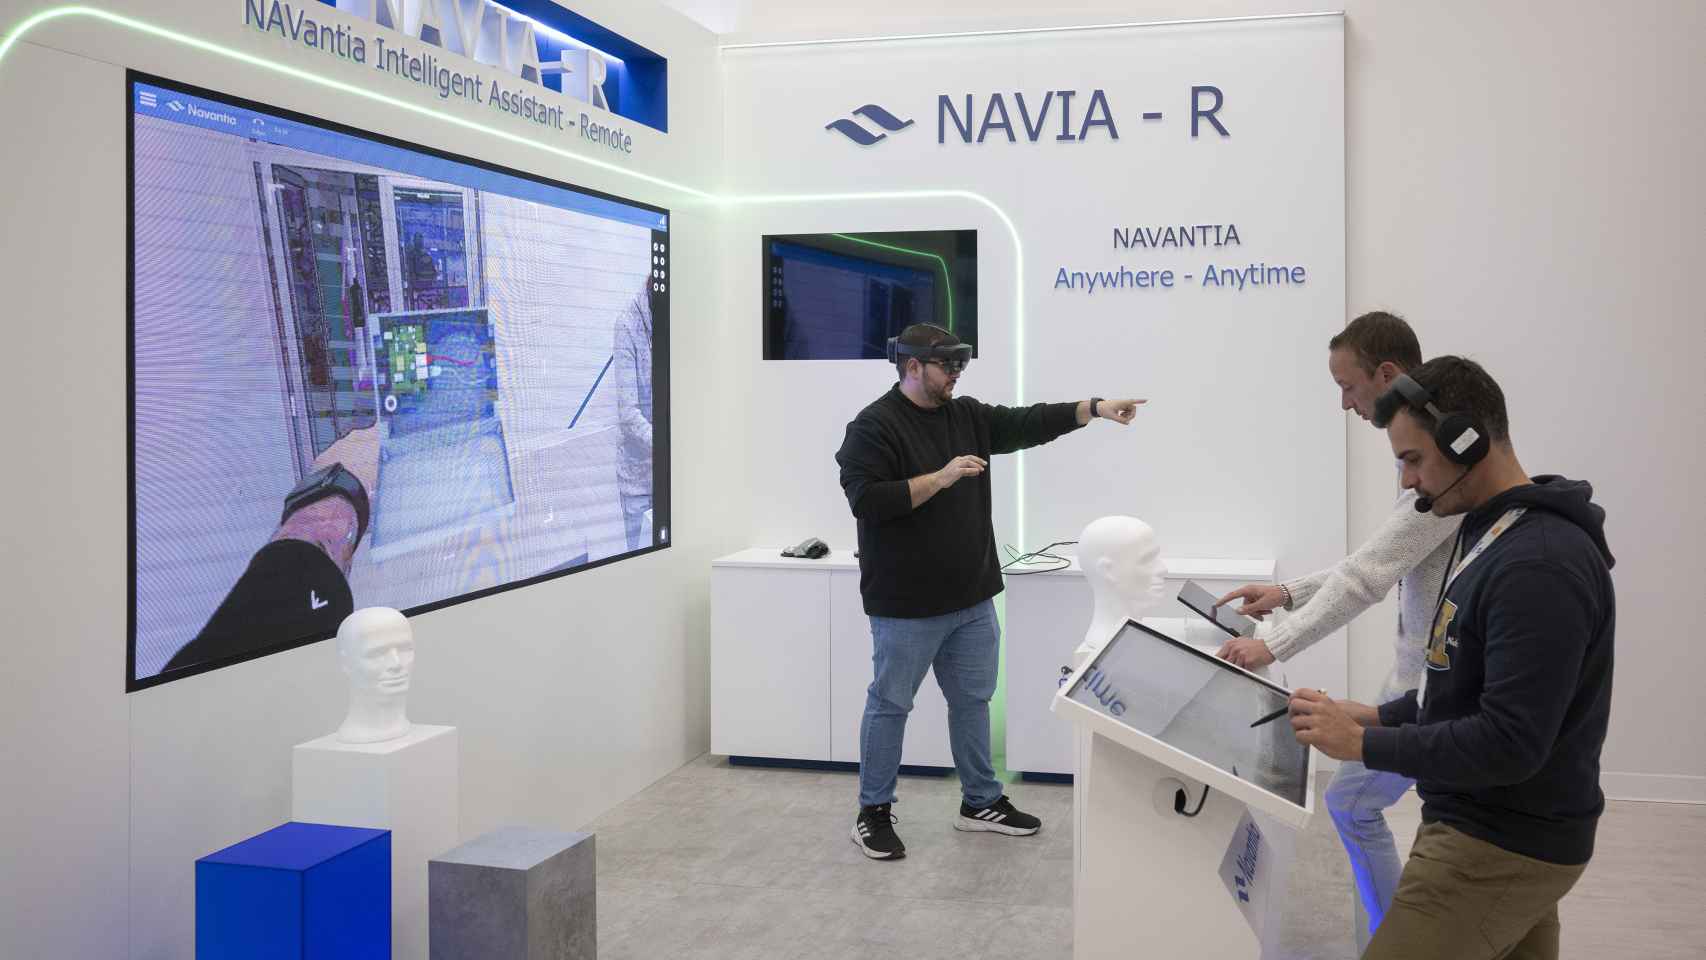 Varios ingenieros de Navantia Sistemas, con el simulador del programa Navia-R (Navantia Intelligent Assistant Remote))